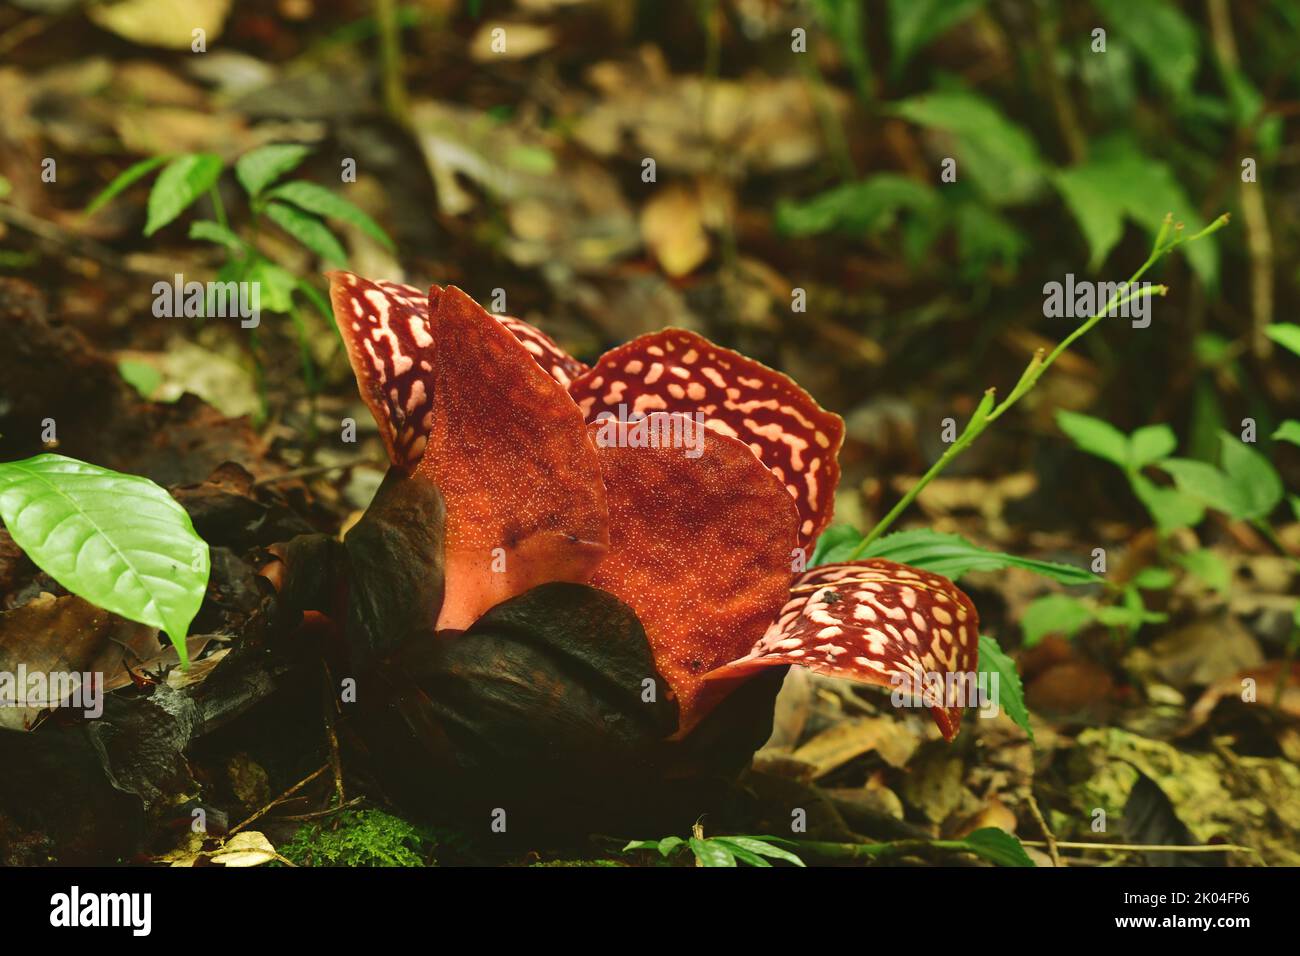 Rafflesia pricei justo antes de florecer en Tambunan, Borneo. Rafflesias son las flores más grandes del mundo Foto de stock